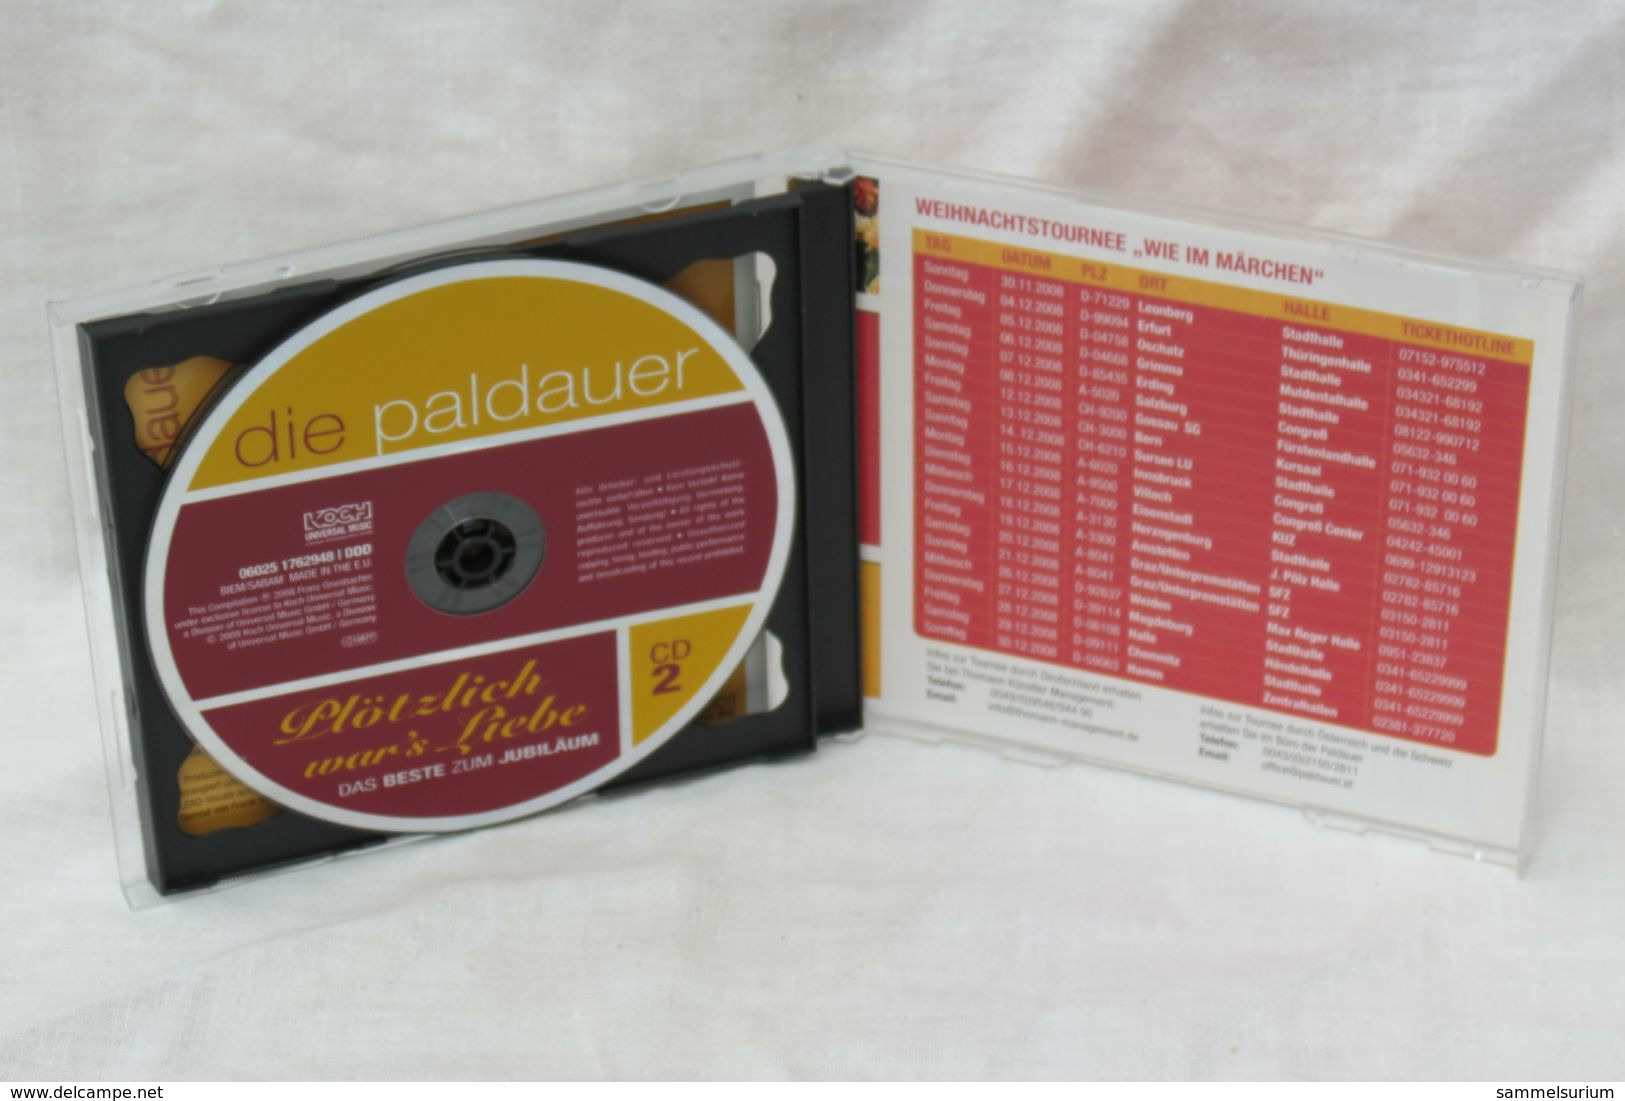 2 CDs "Die Paldauer" Plötzlich War's Liebe, Das Beste Zum Jubiläum - Sonstige - Deutsche Musik